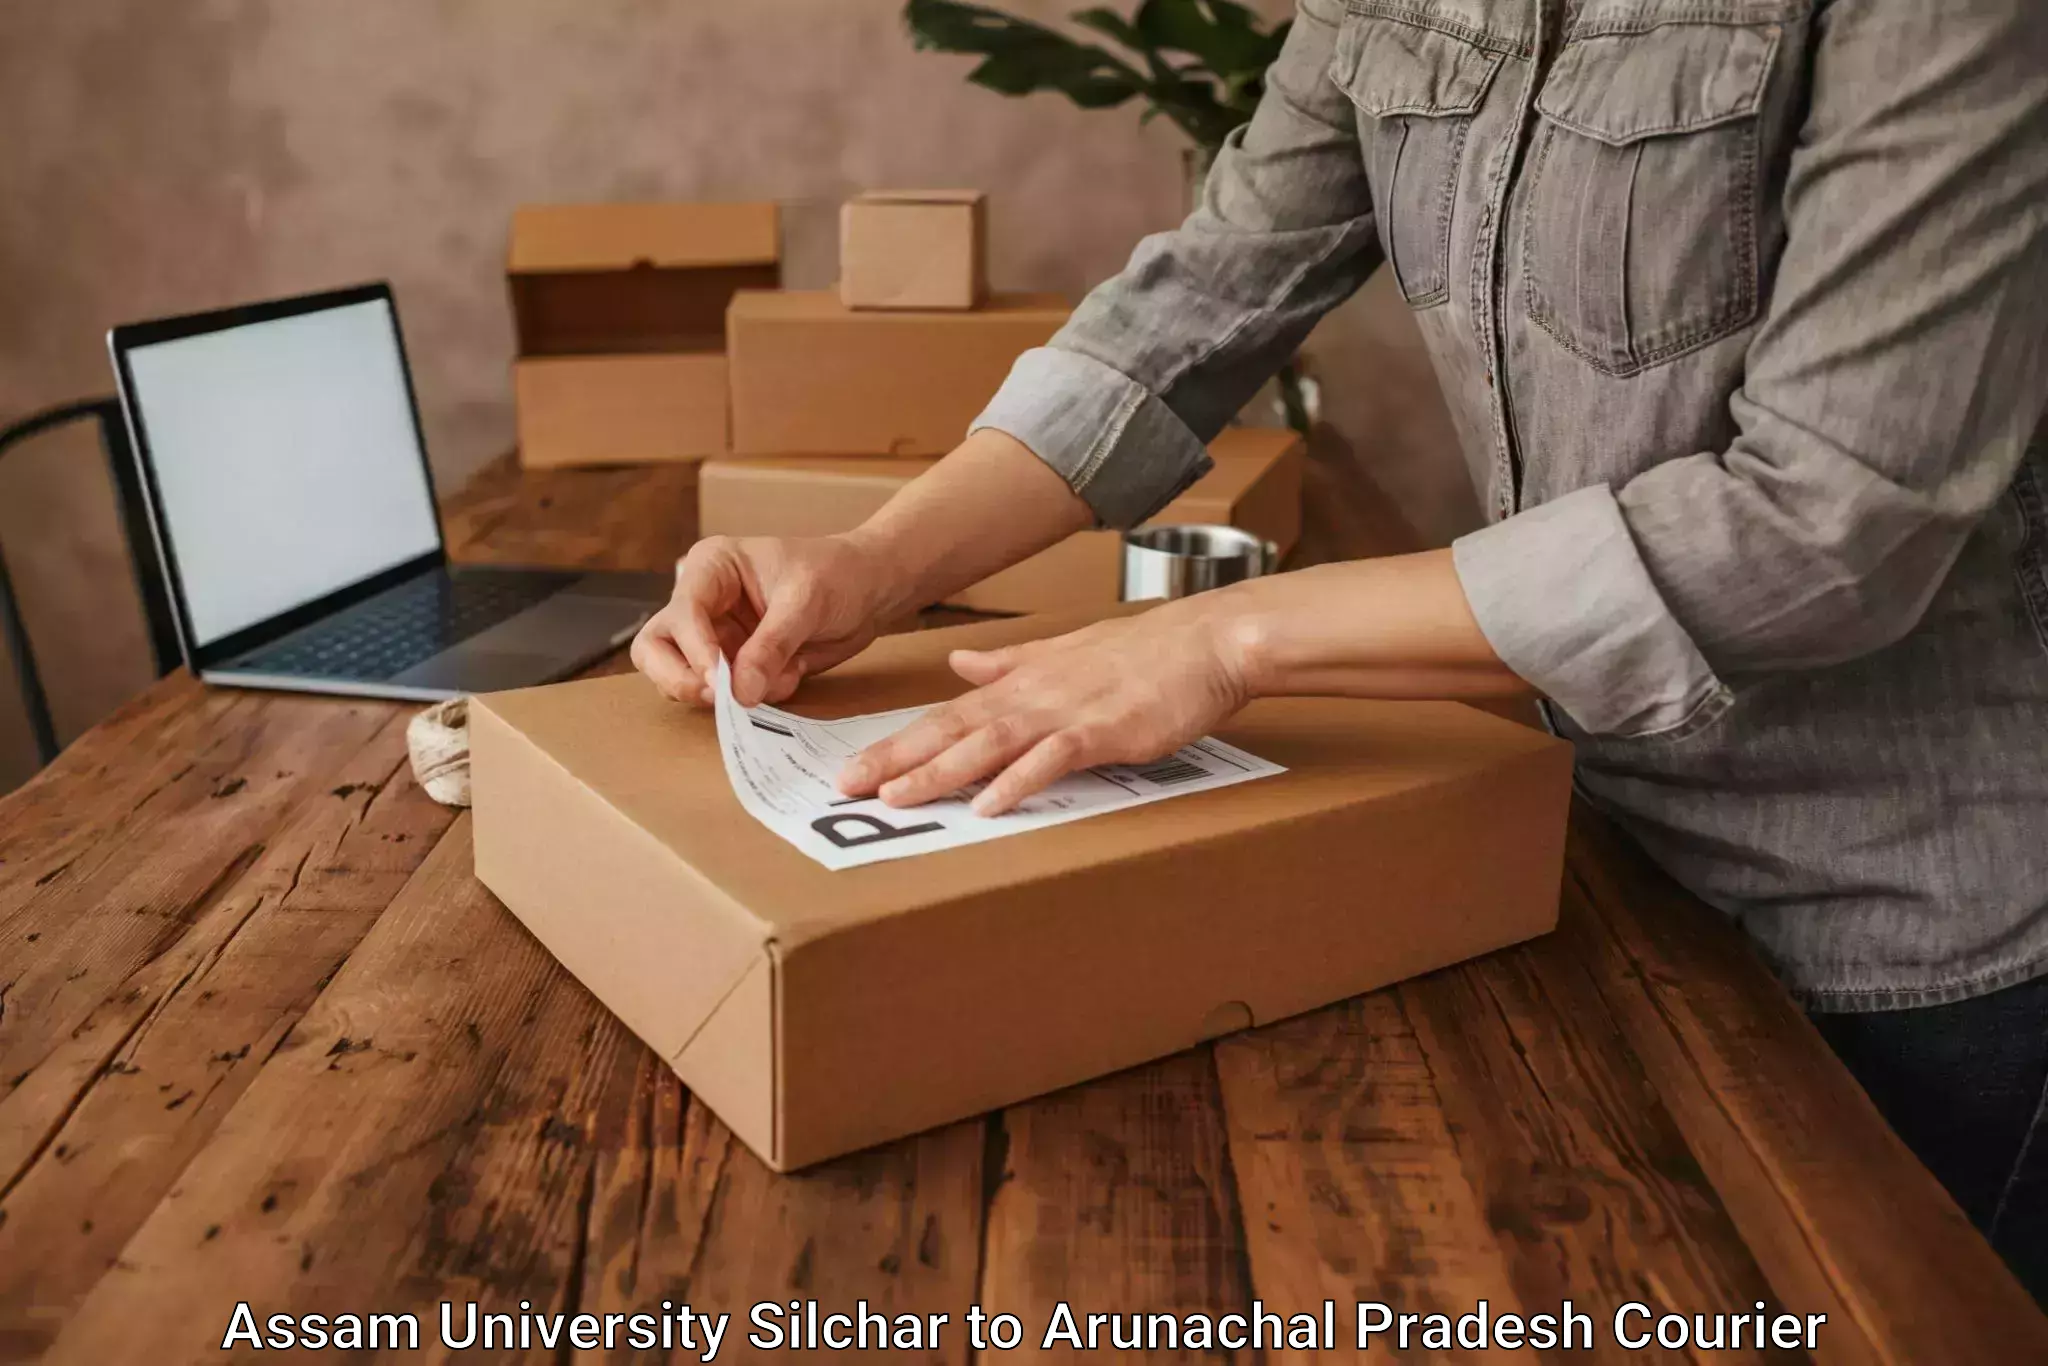 Local delivery service Assam University Silchar to Arunachal Pradesh